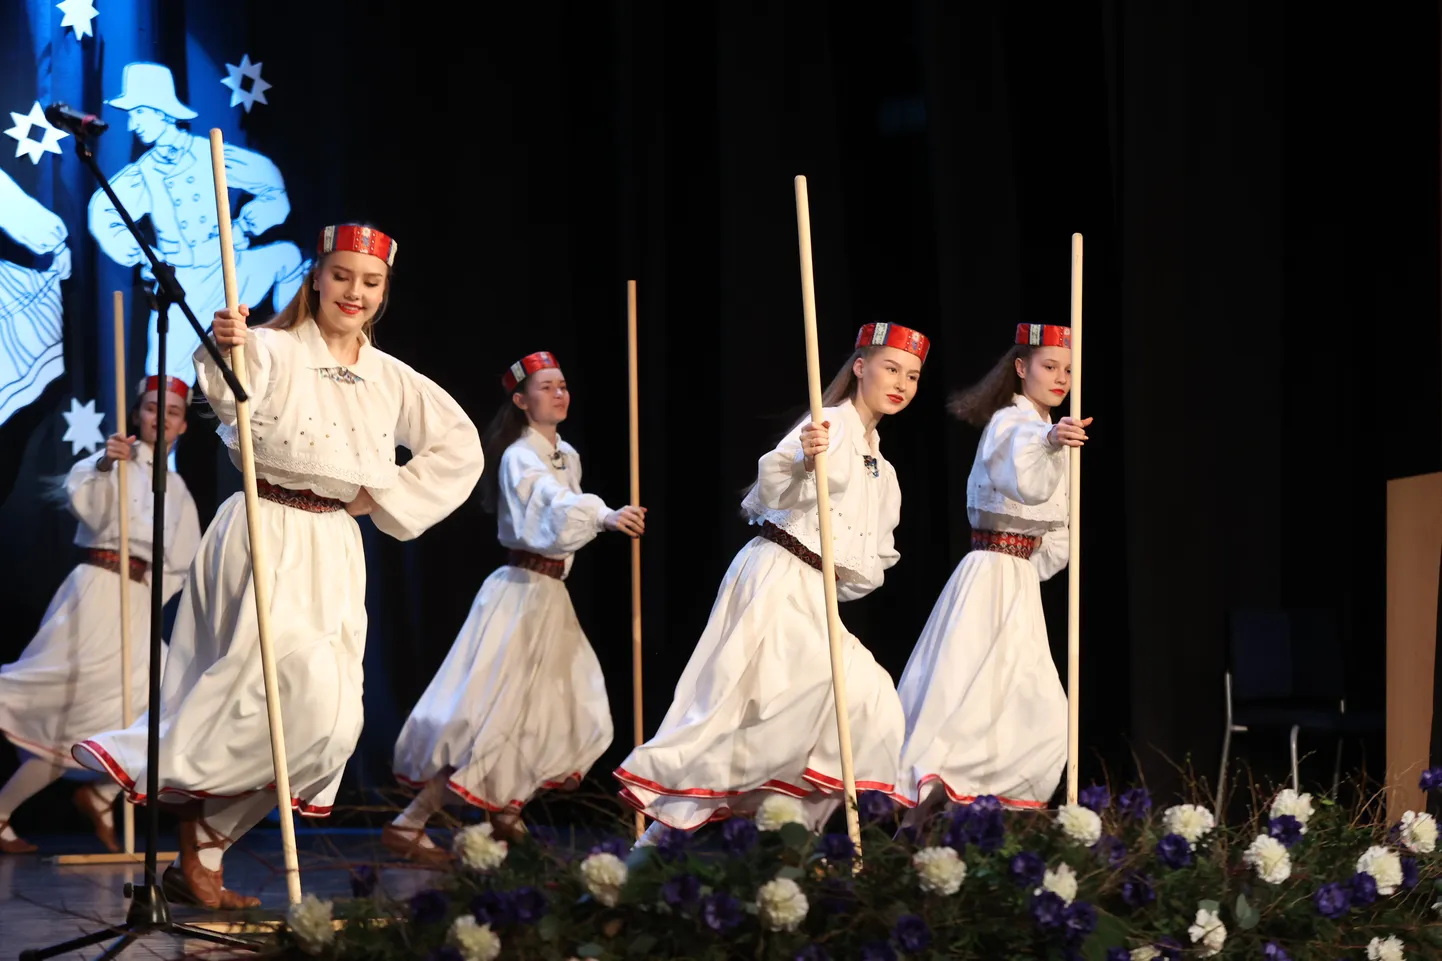 Türi kultuurikeskuses toimus Eesti vabariigi 106. aastapäevale pühendatud pidulik kontsert-aktus.